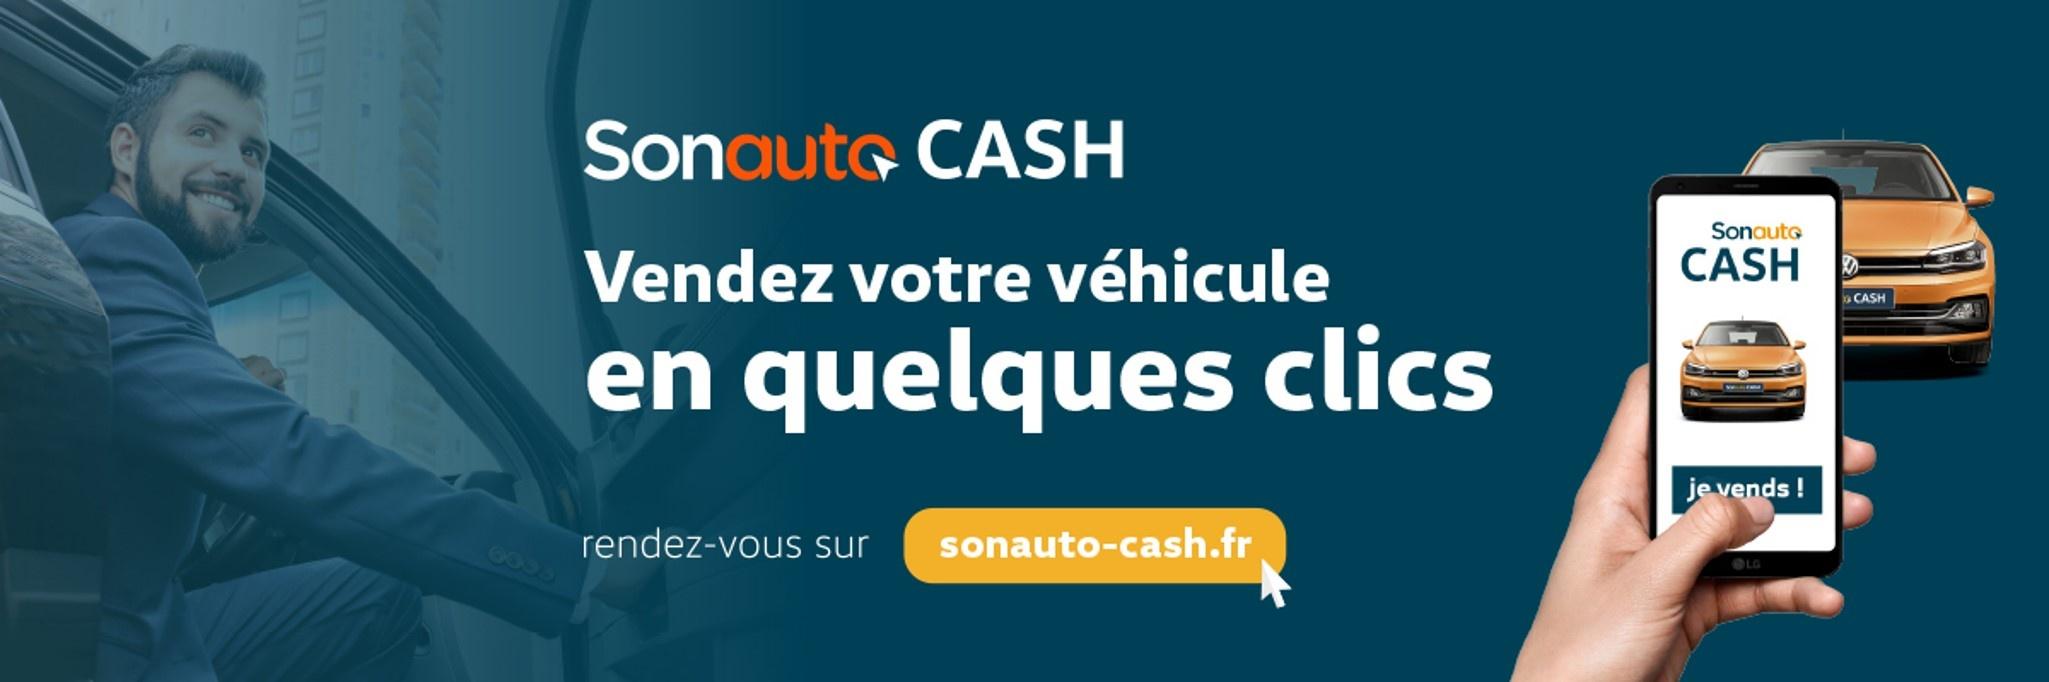 Riviera Technic - Volkswagen Utilitaires Mandelieu - Vendez votre véhicule en quelques clics avec Sonauto Cash